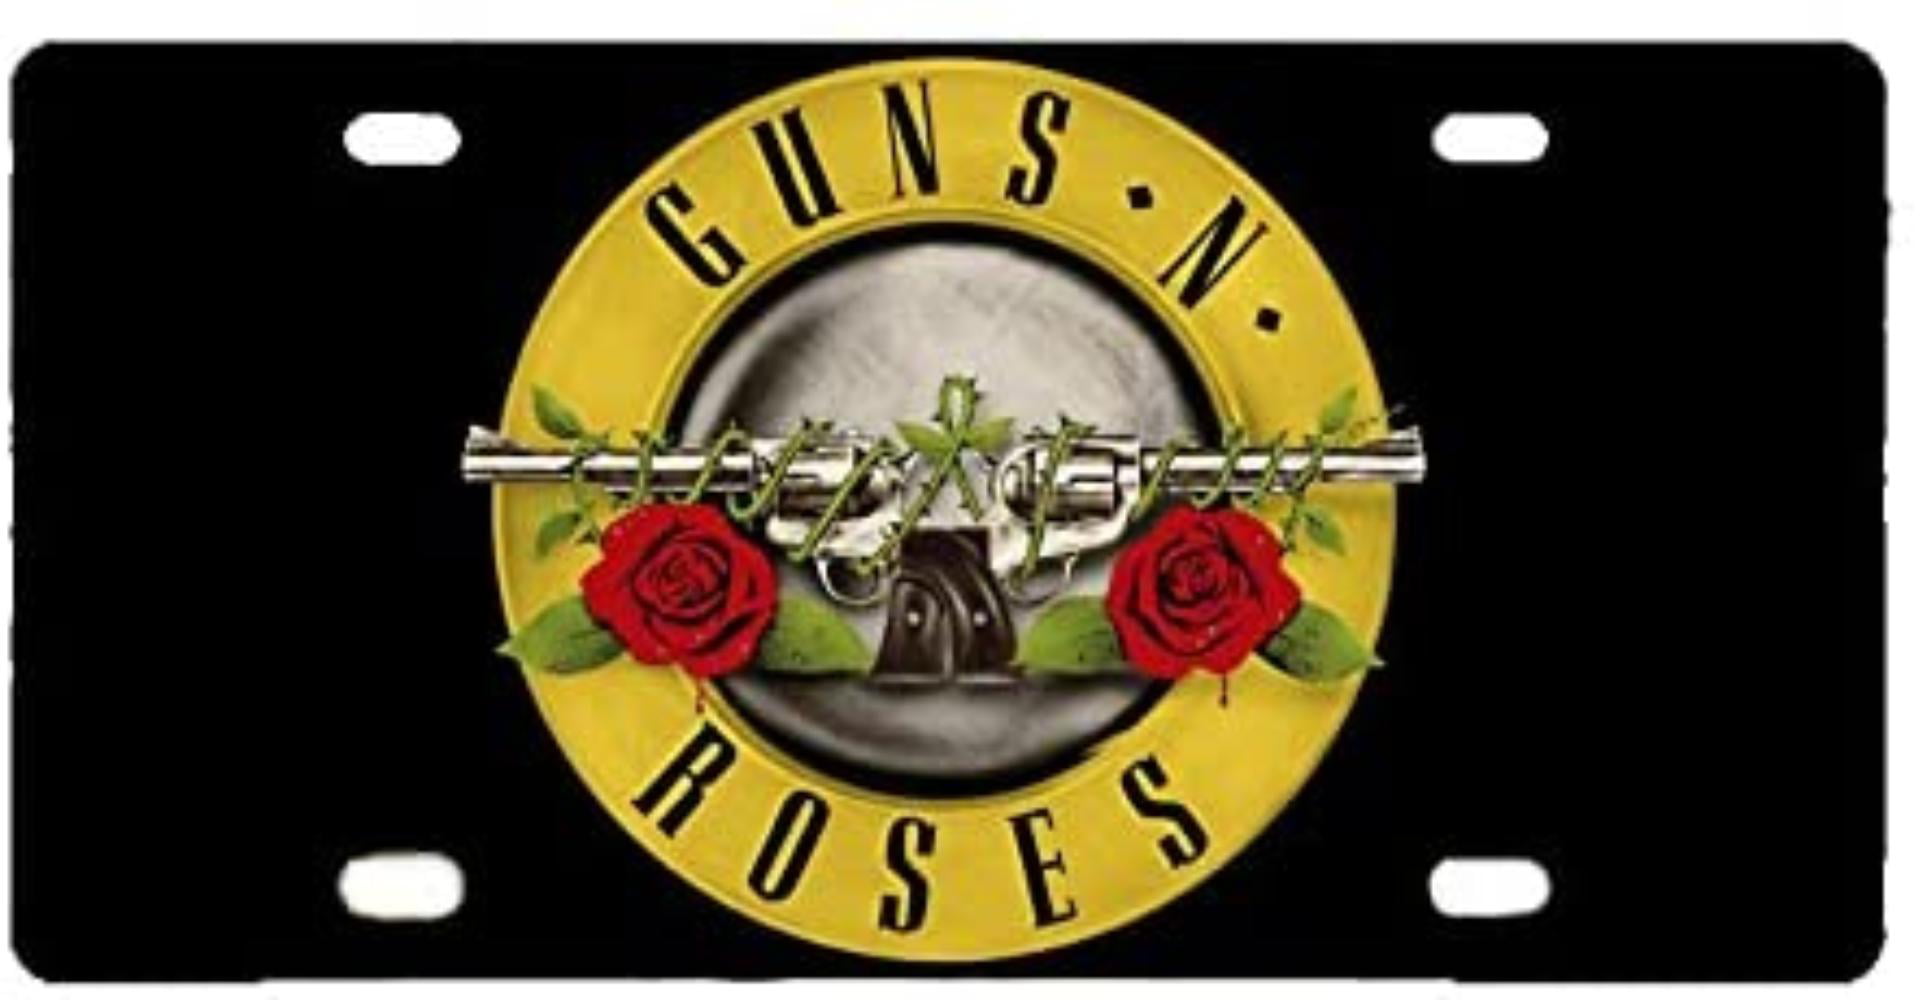 Guns N' Roses 1985 California Metal License plate 